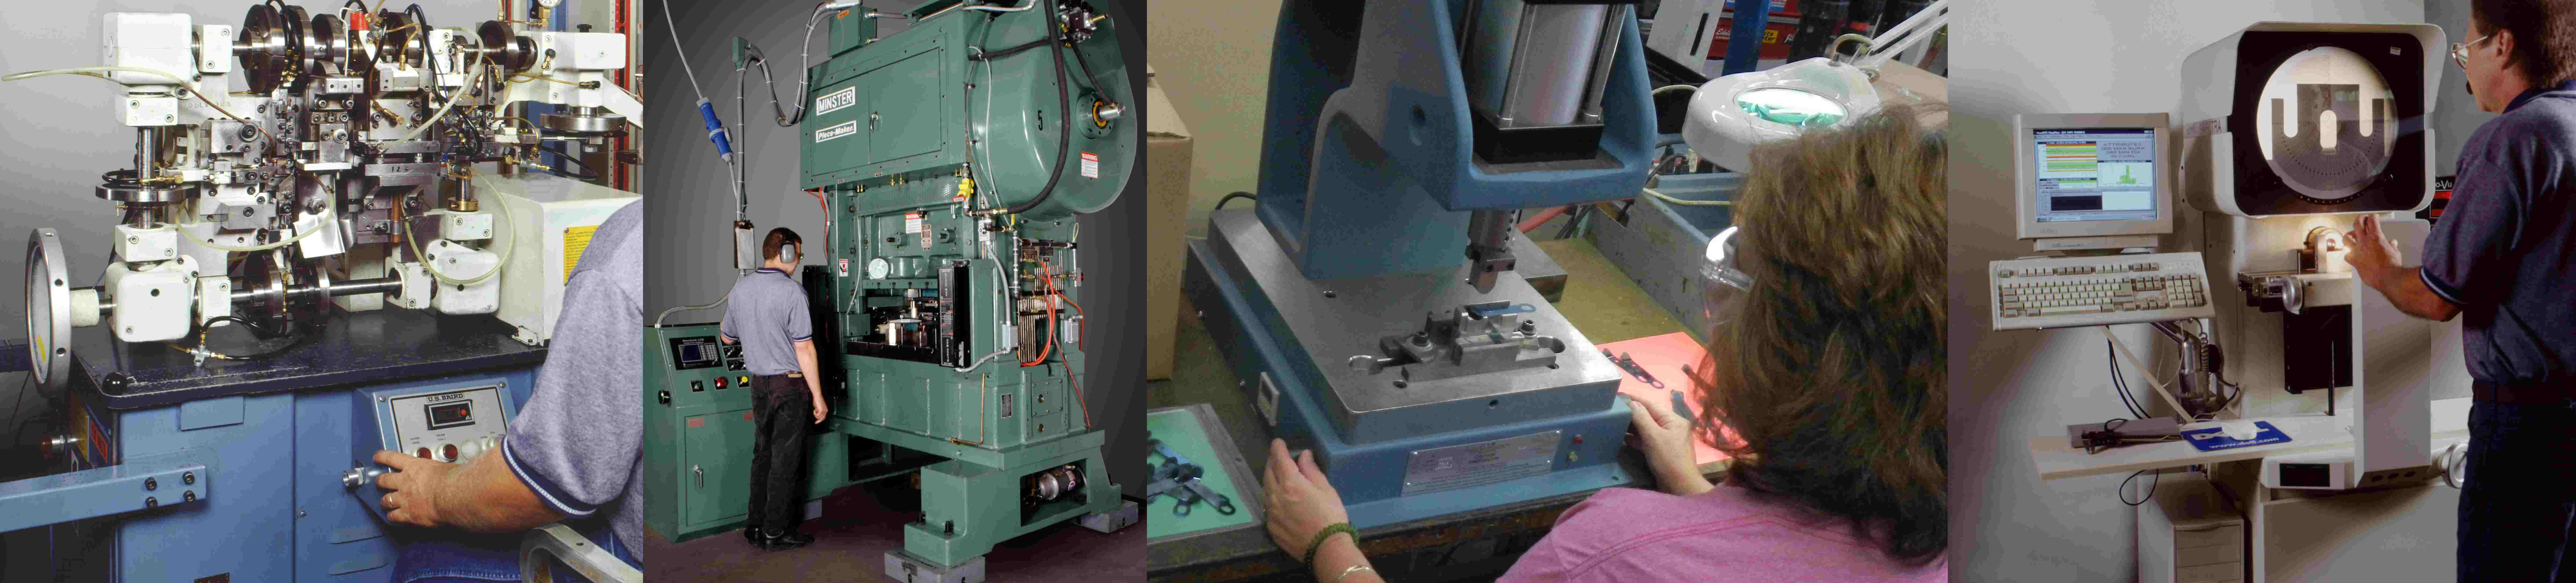 people operating metal stamping machines